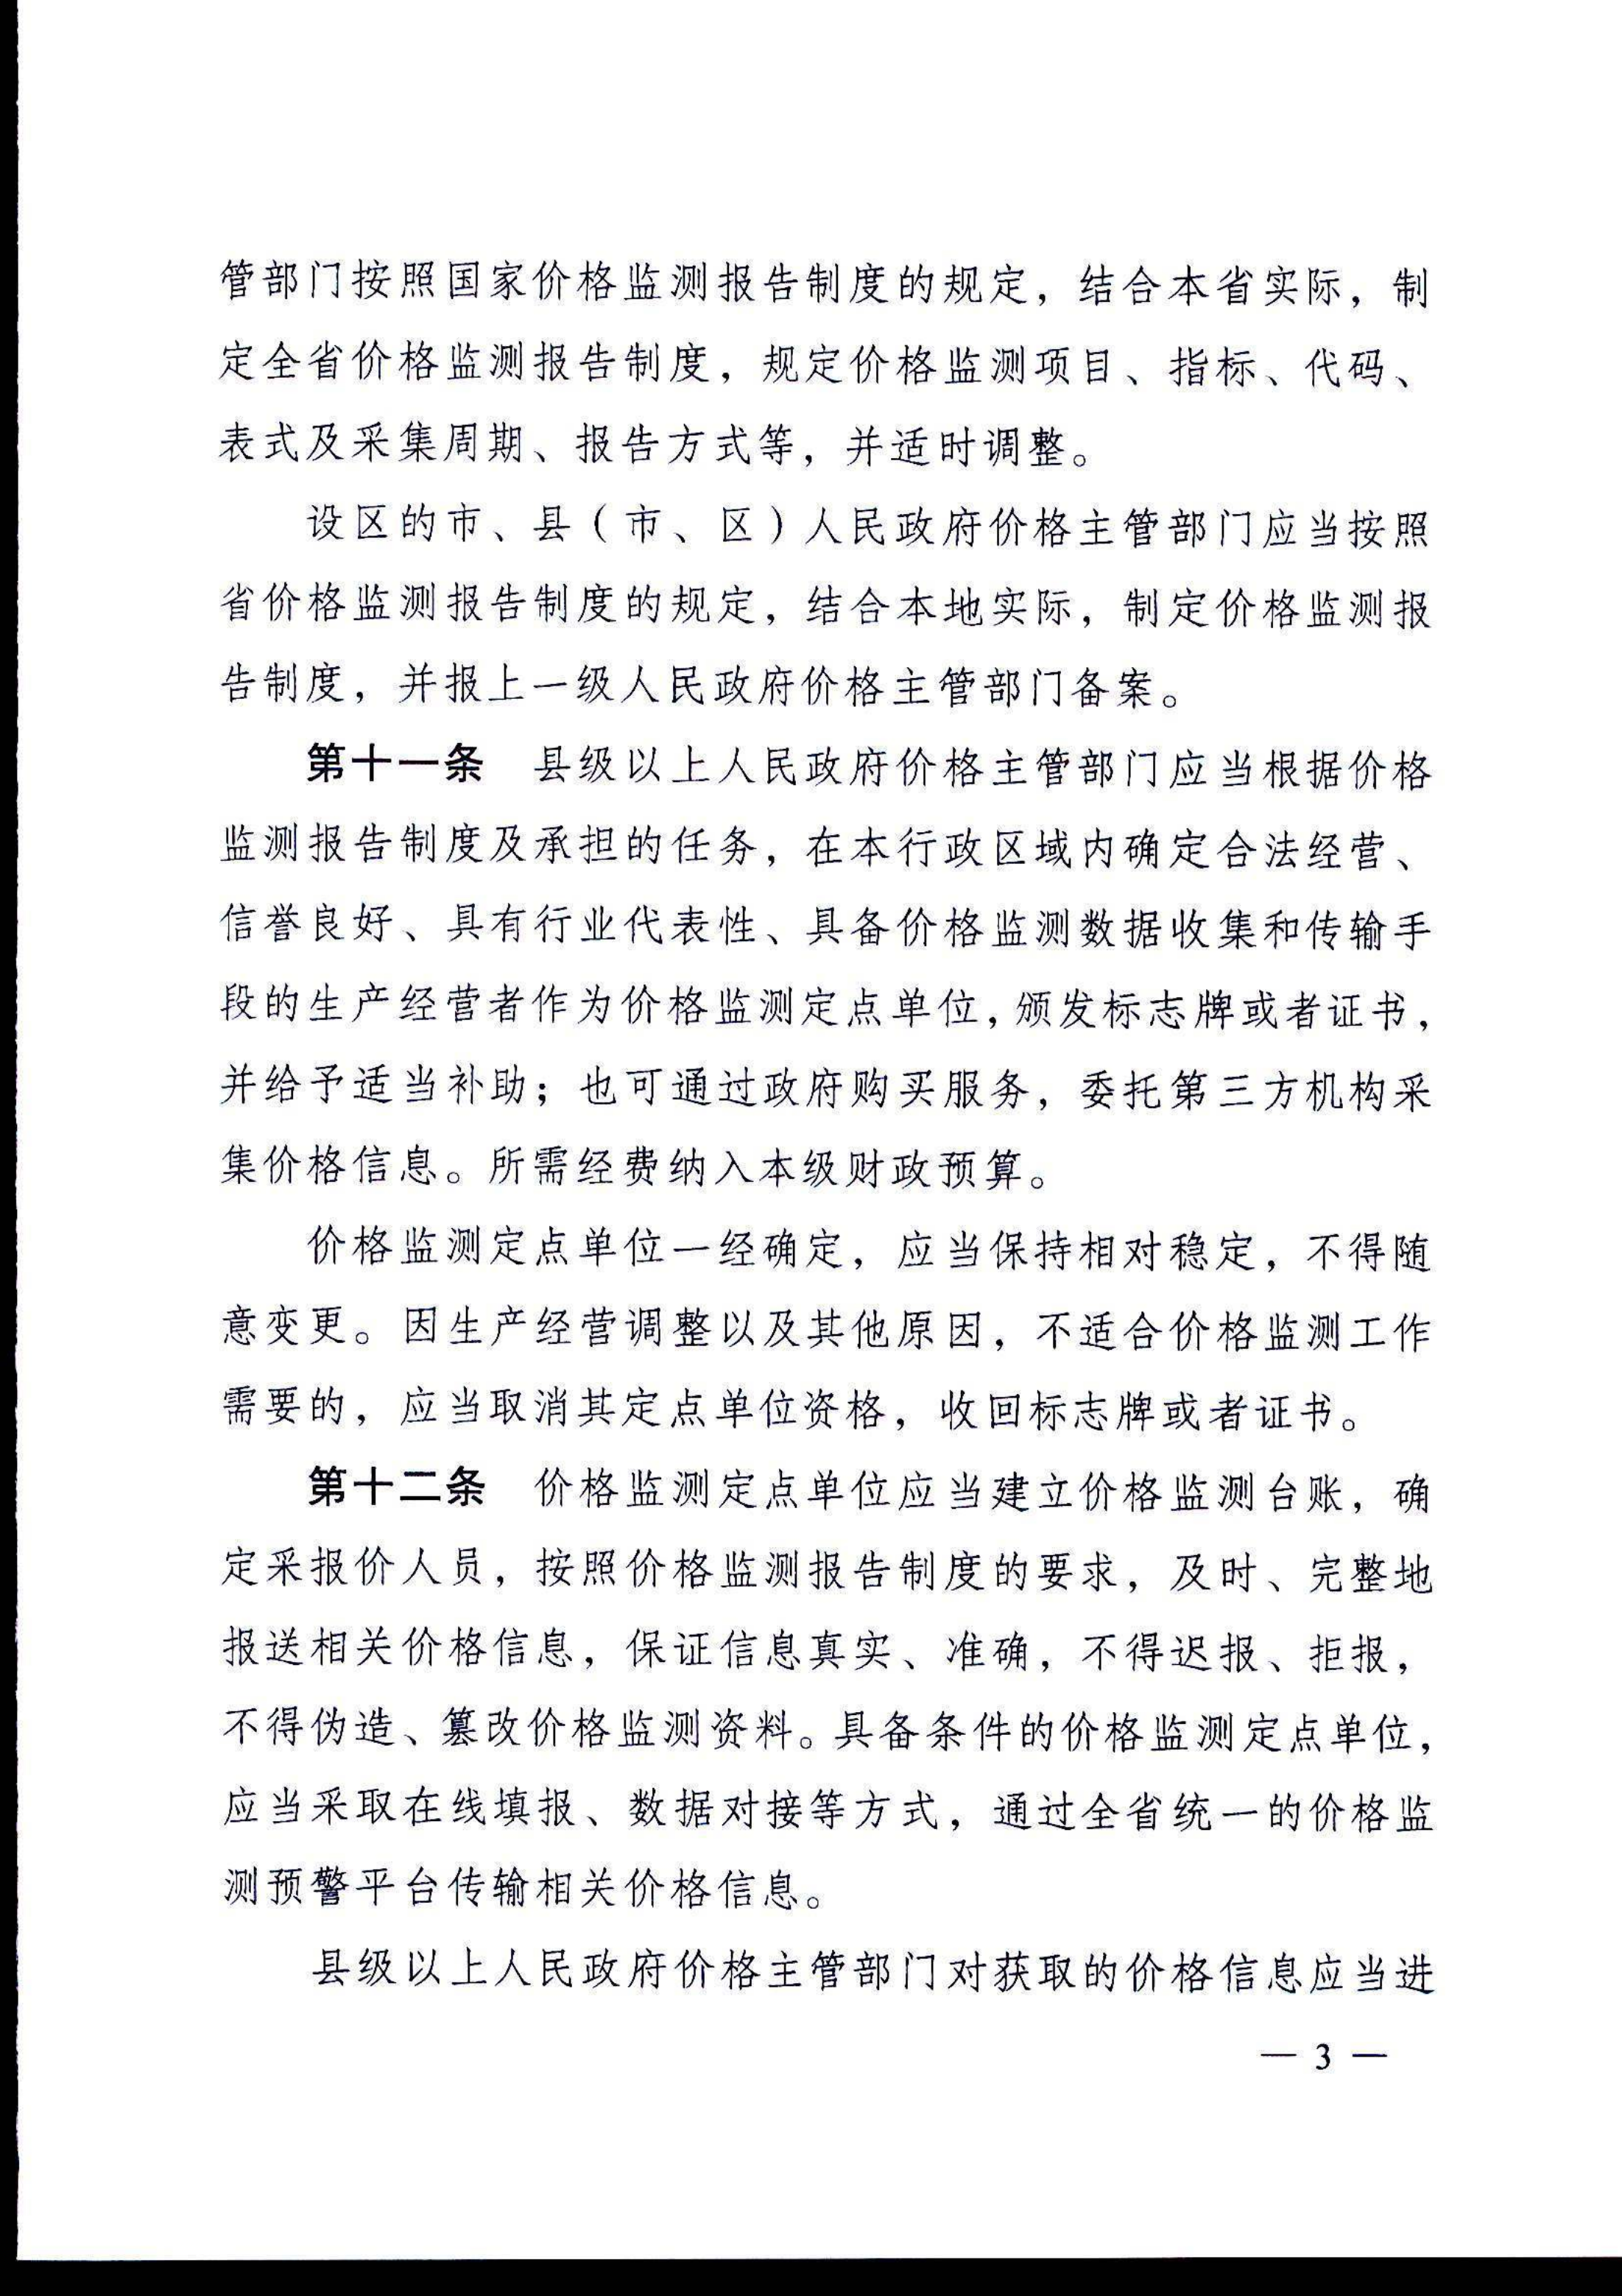 安徽省价格监测预警管理办法(1)(1)_4.png